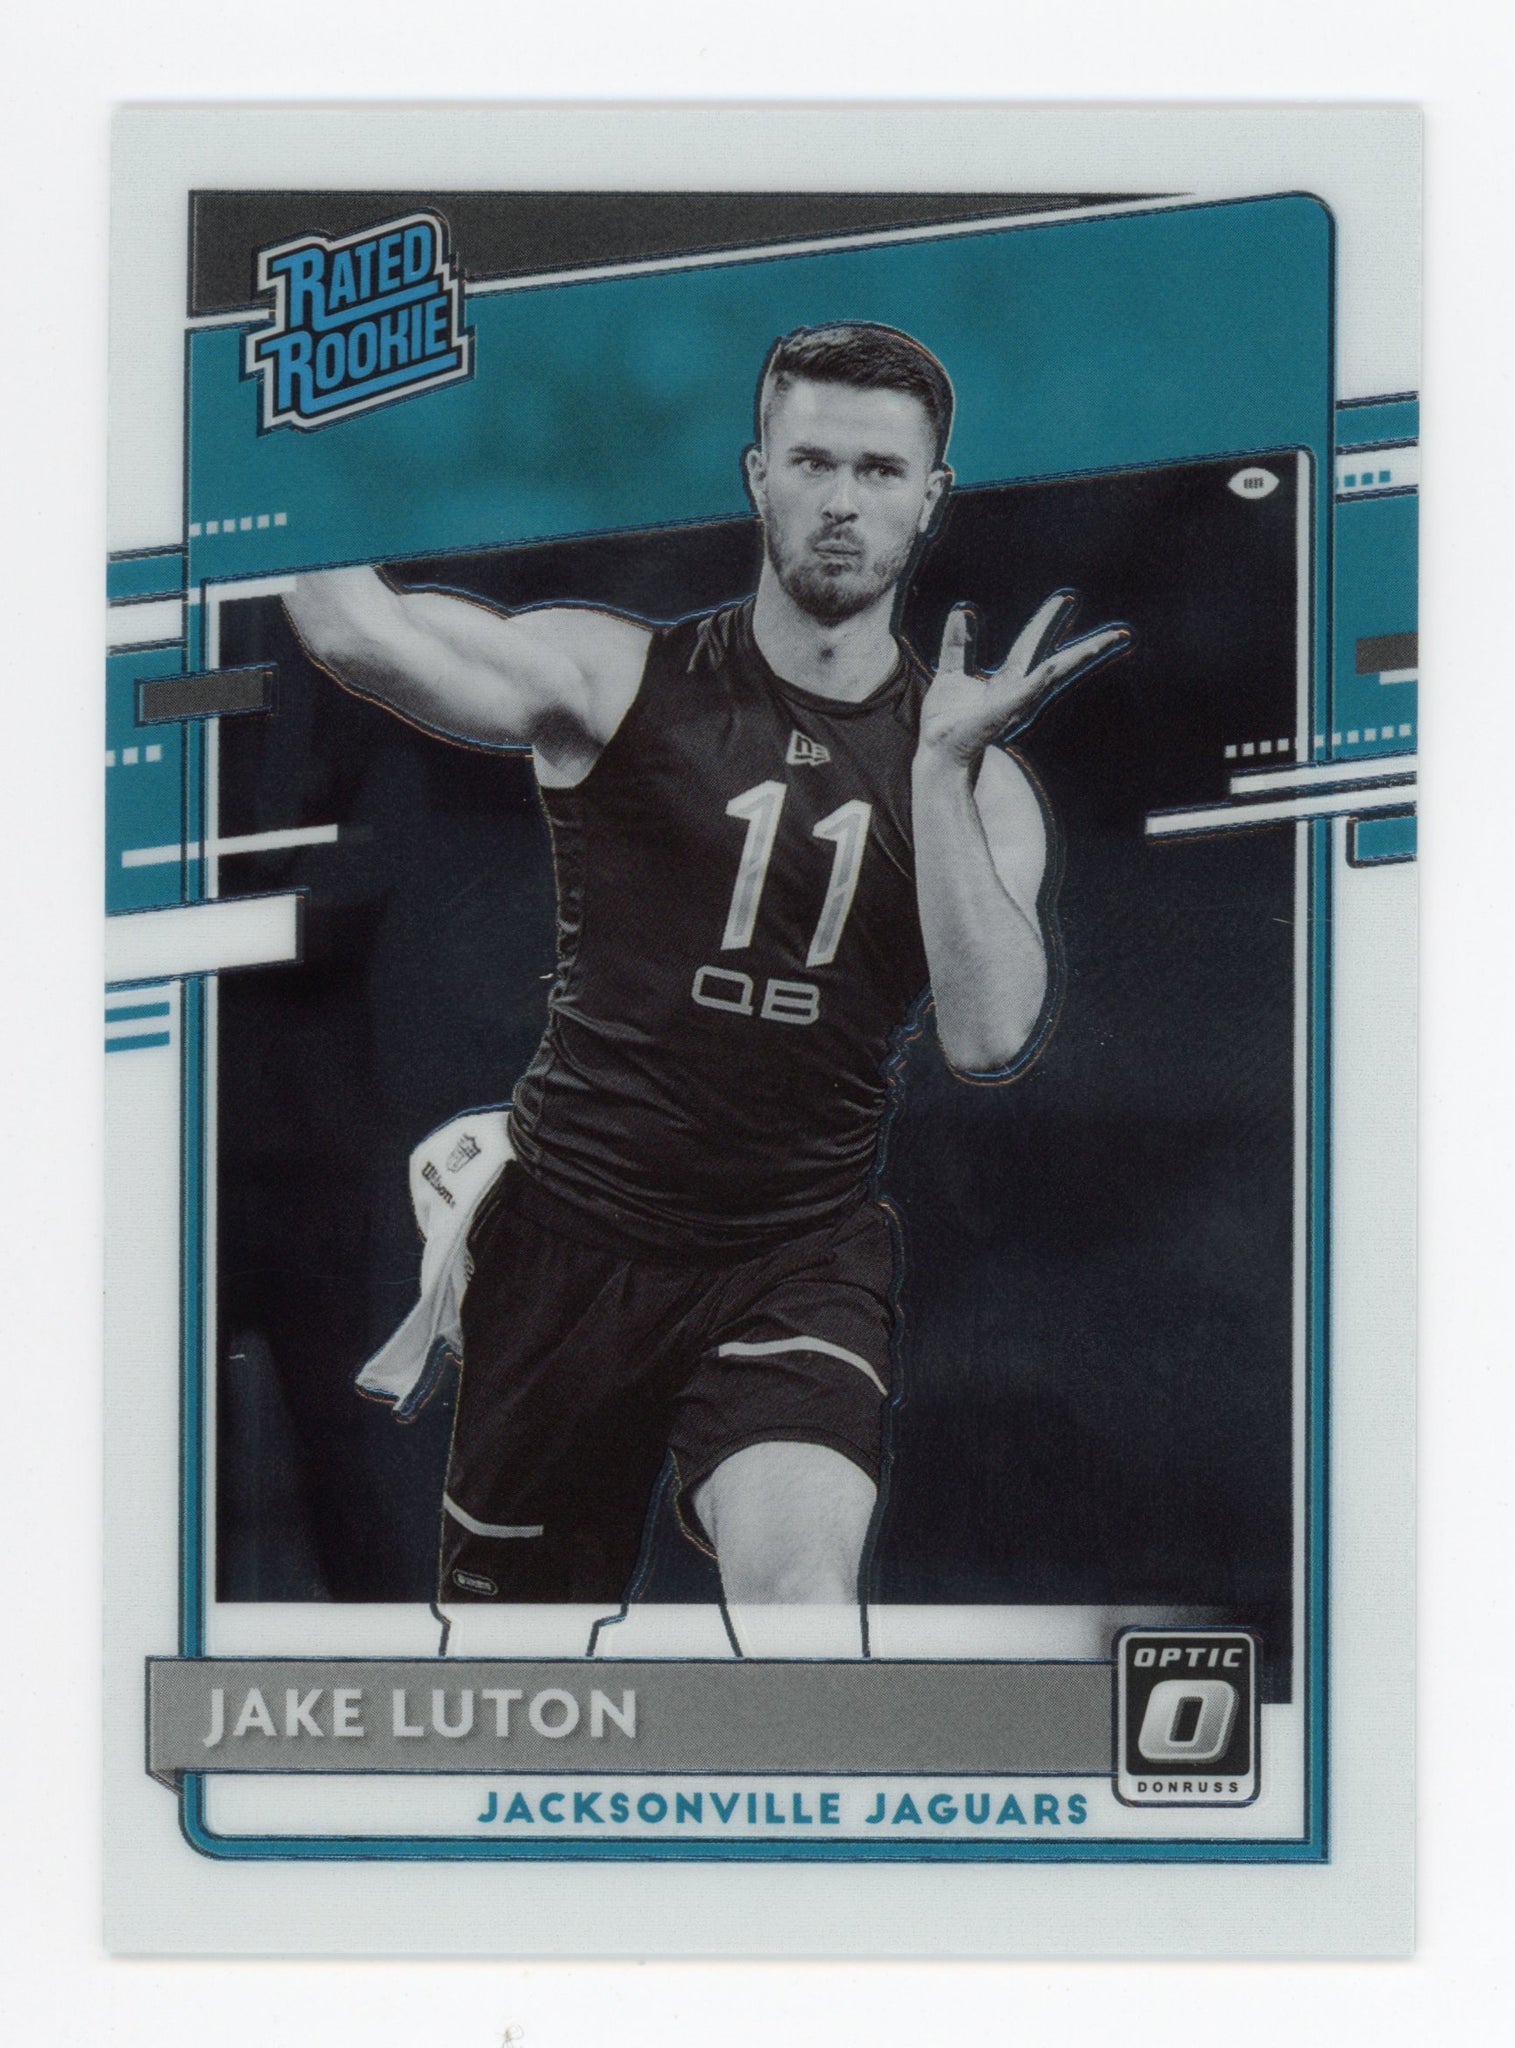 2020 Jake Luton Rated Rookie Negative Panini Jacksonville Jaguars # 344